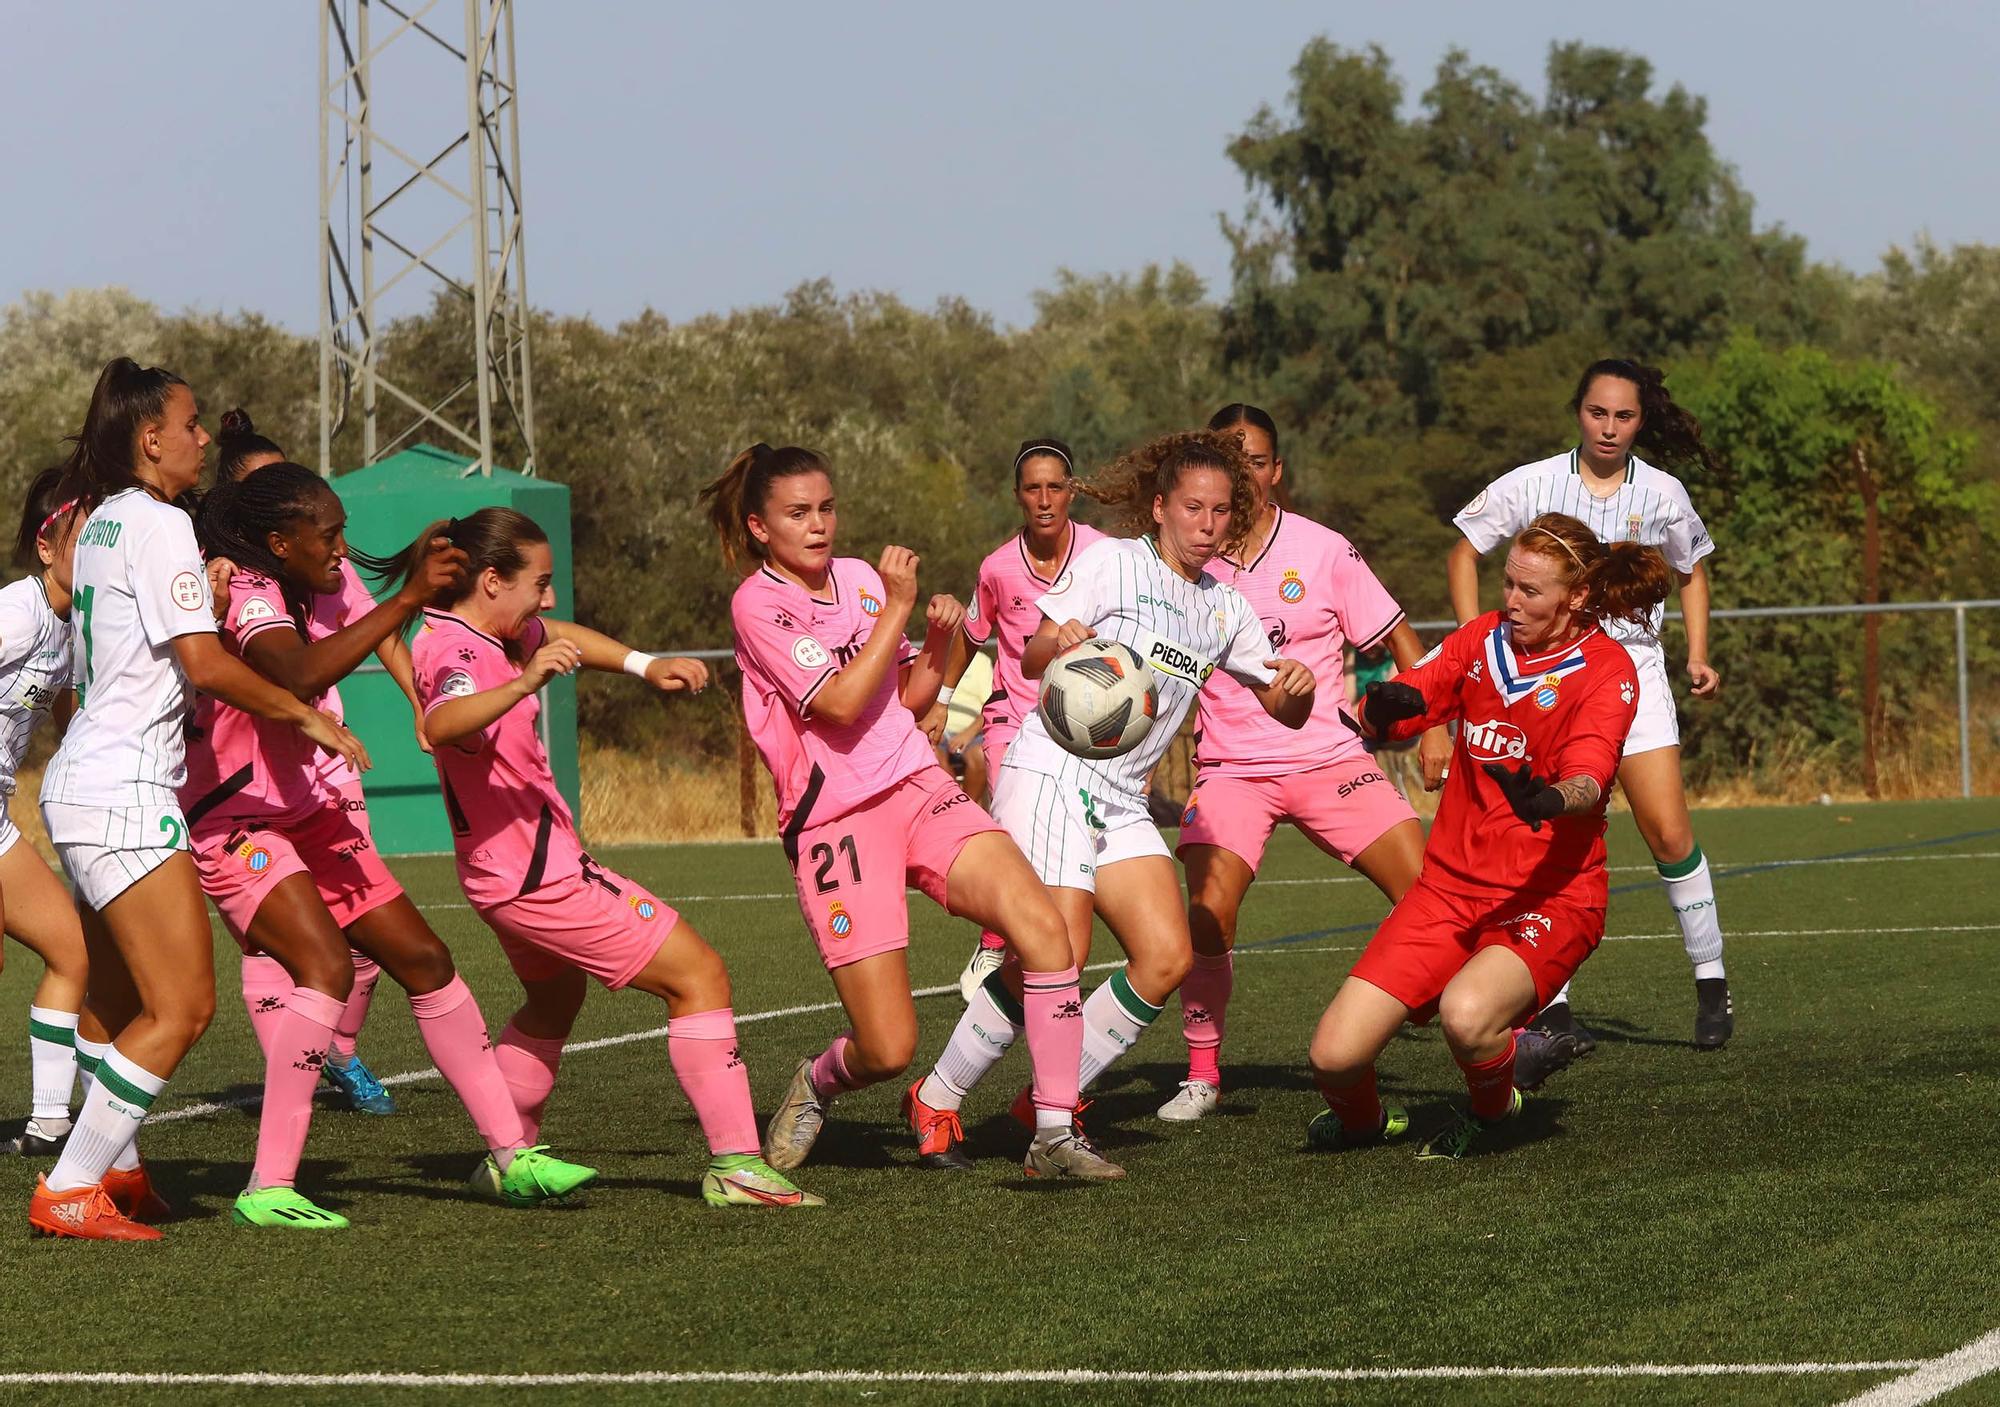 Las imágenes del Córdoba CF Femenino-Espanyol